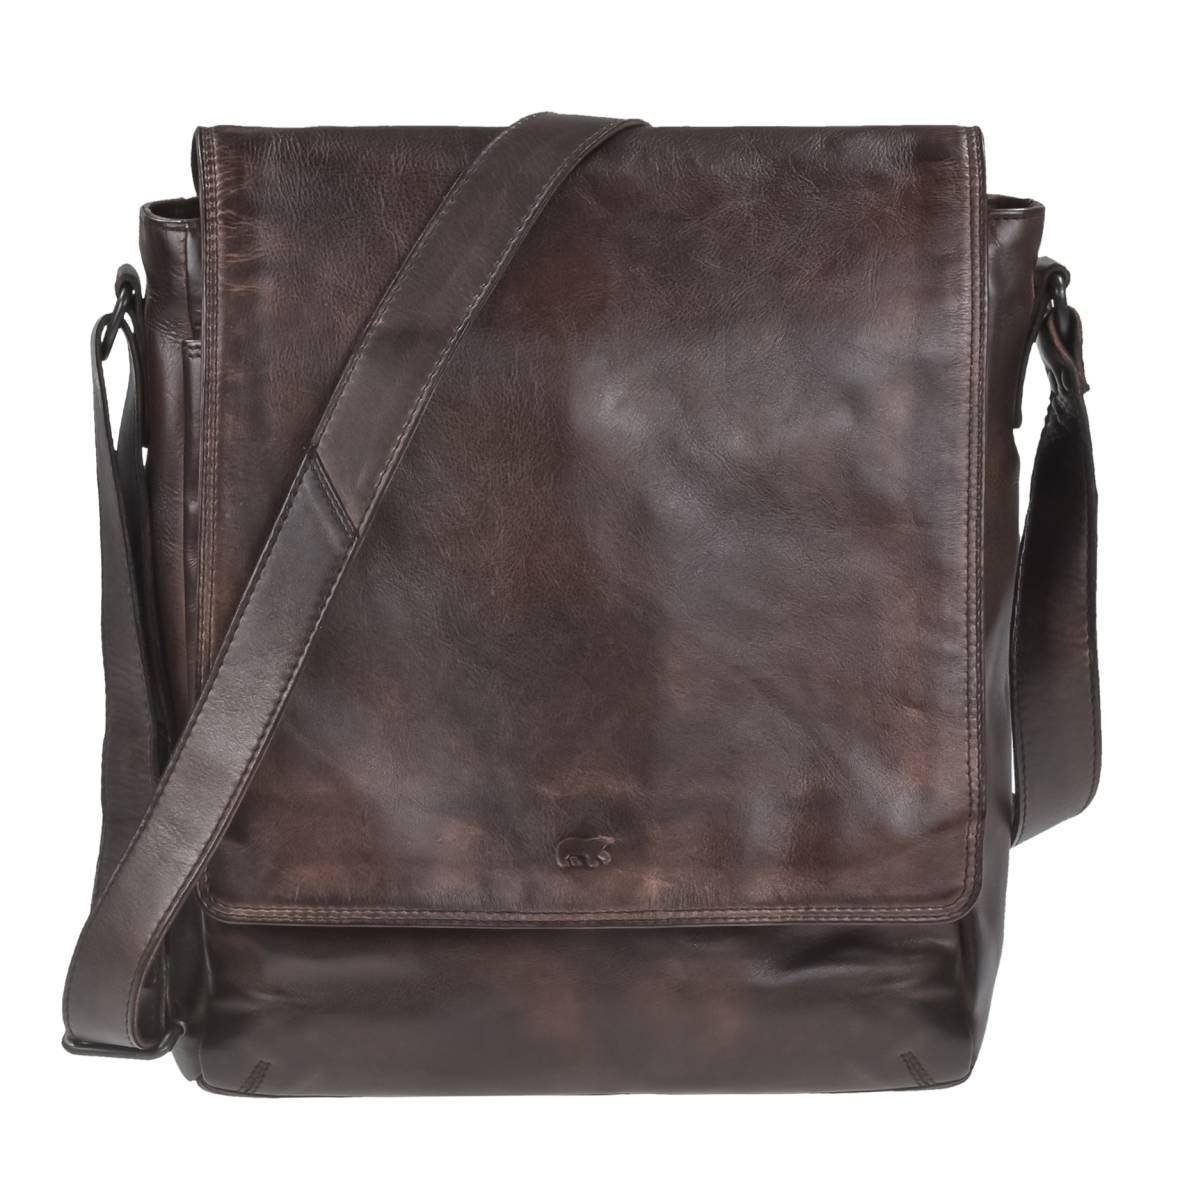 Bear Design Umhängetasche Dustin, Messenger Bag, Schultertasche 32x34cm, weiches knautschiges Leder brown